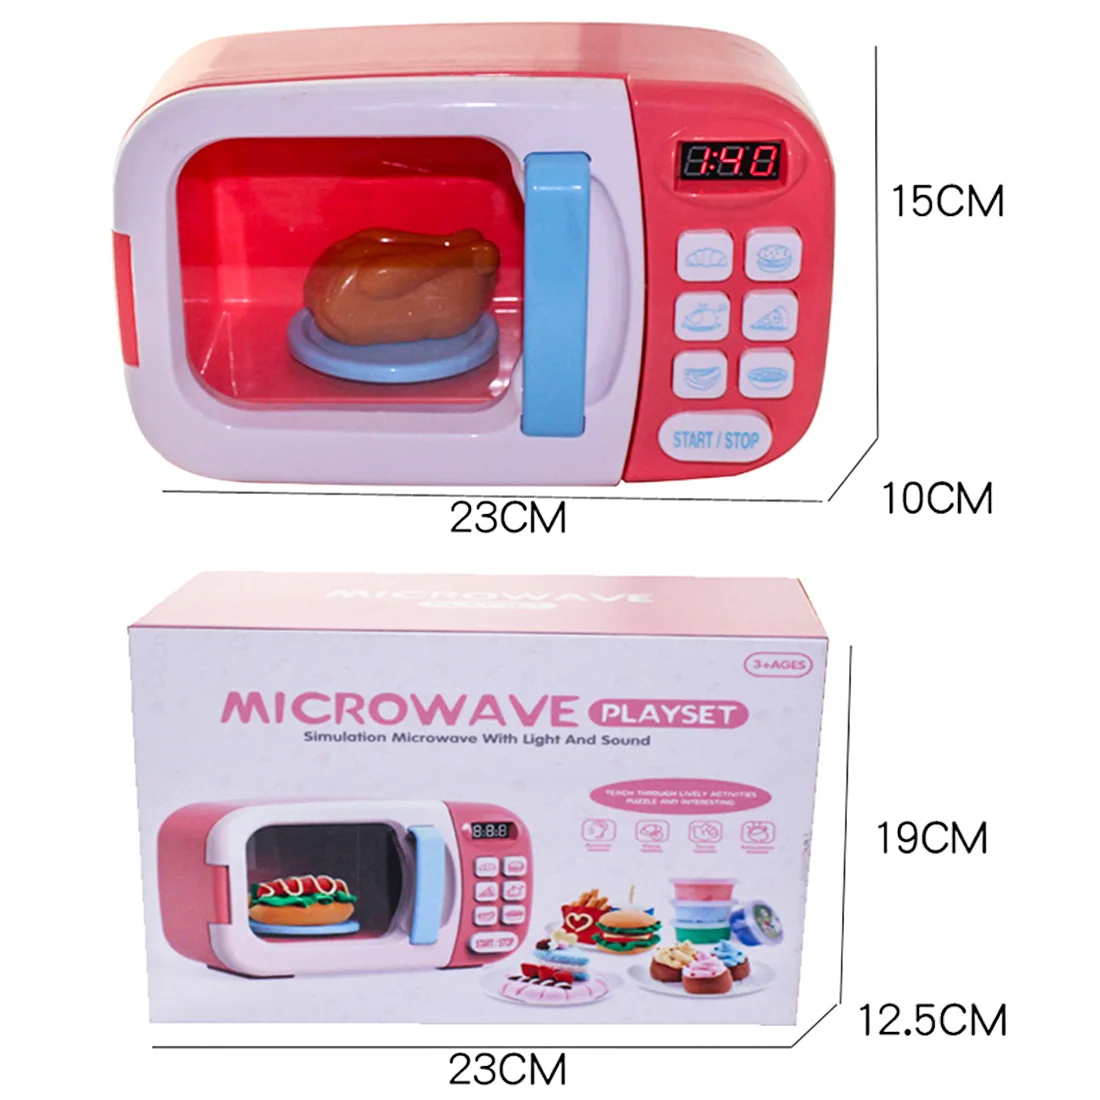 Горячие дети ролевые игры игрушки электрические бытовые приборы моделирование Микроволновая печь с светильник вращающийся игровой набор для детей-синий/розовый